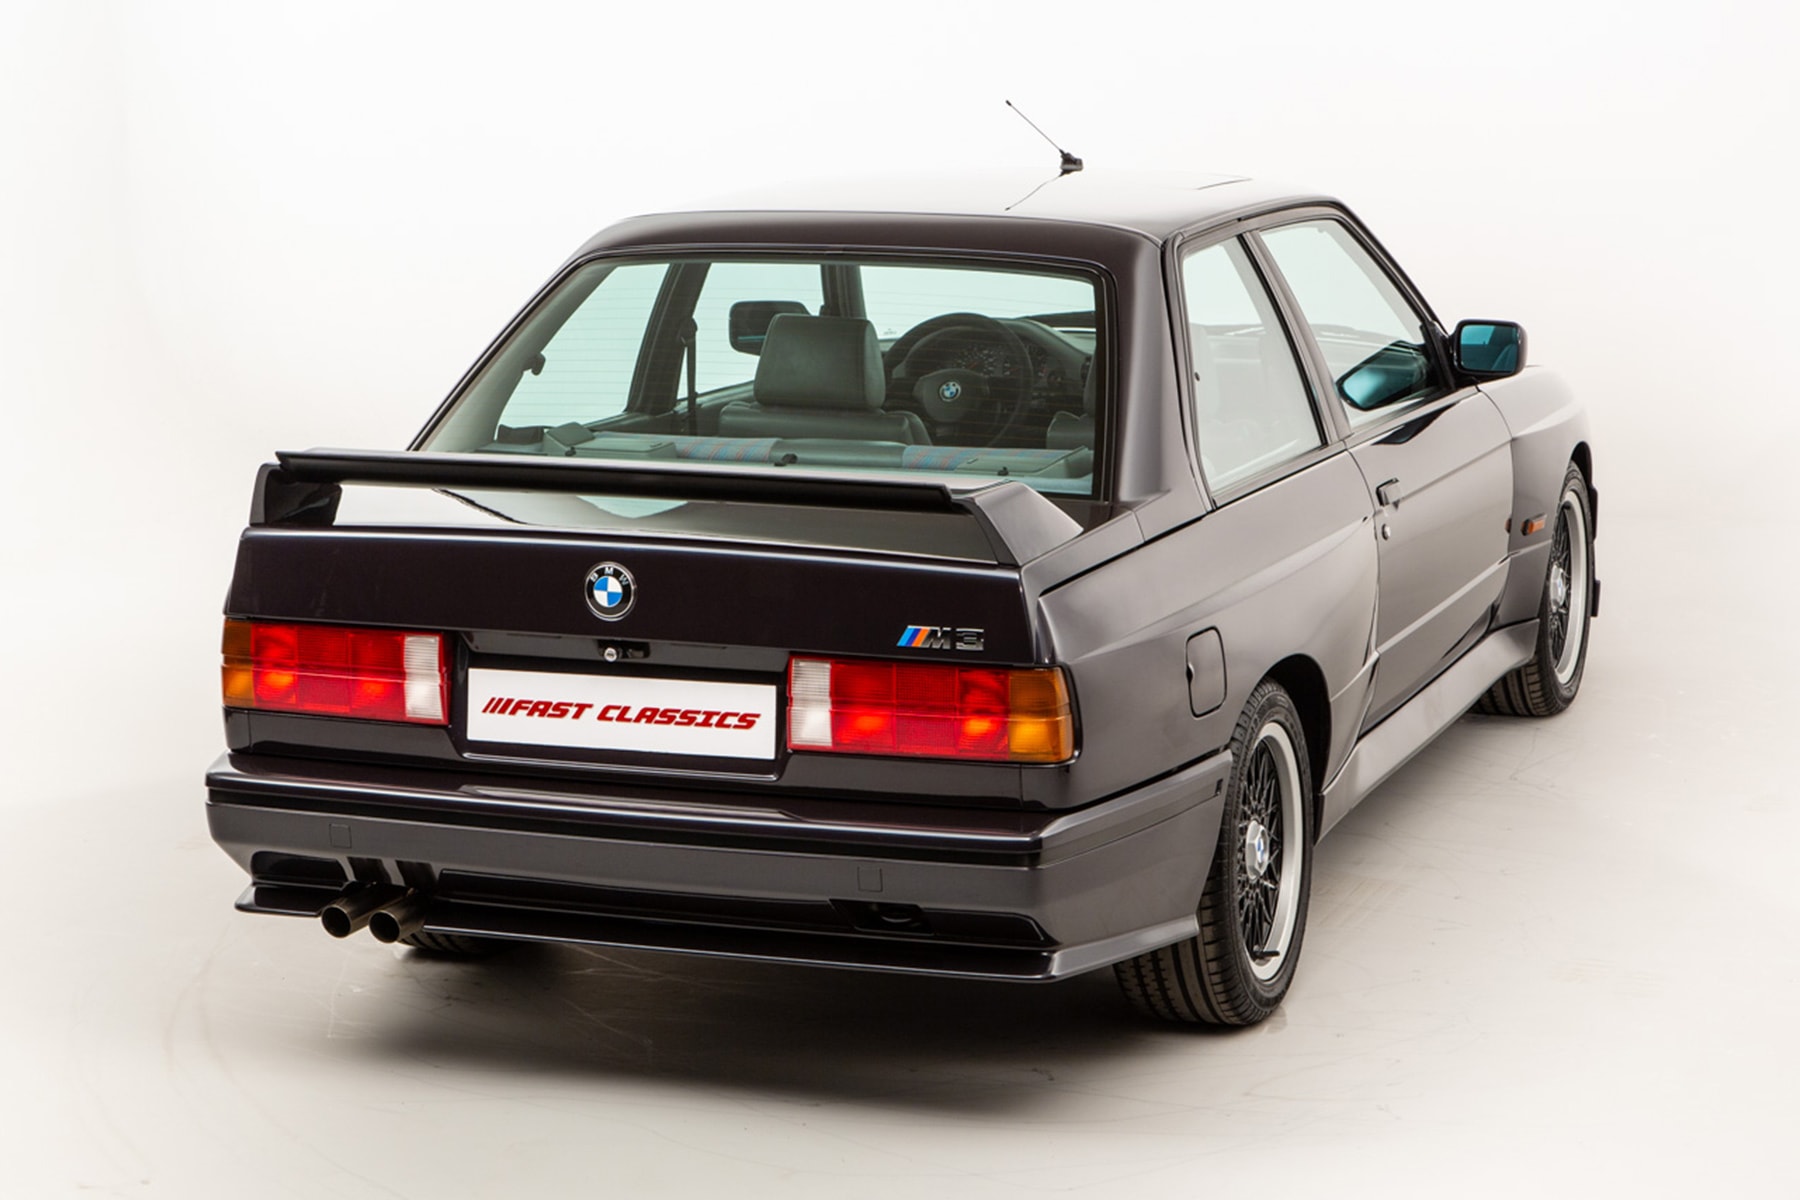 限量 480 輛 BMW E30 M3「Johnny Cecotto Edition」稀有車型展開販售